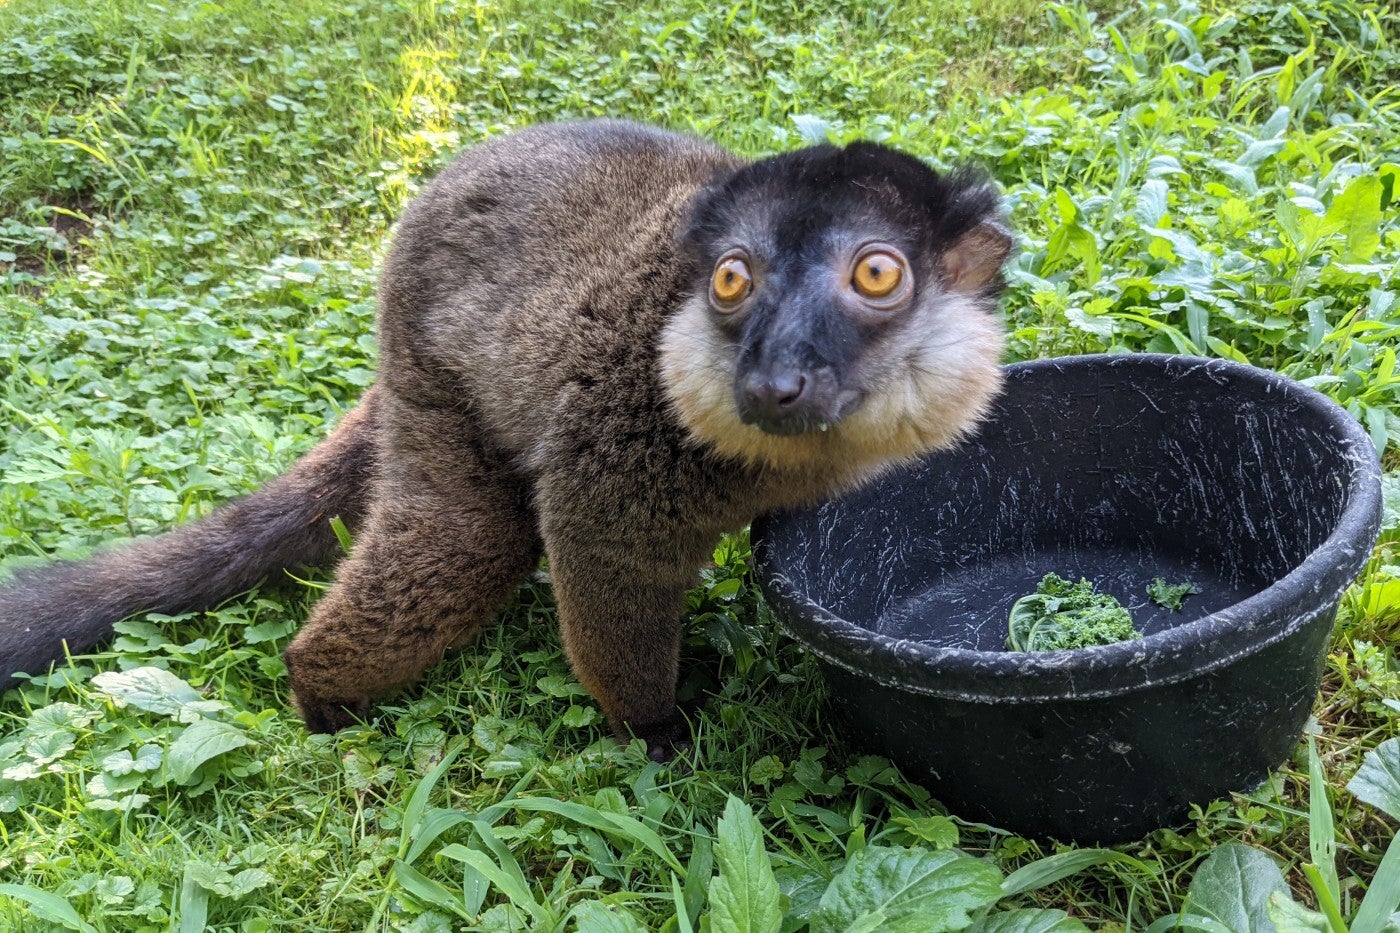 Collared lemur Beemer eats some vegetable in his outdoor habitat. 